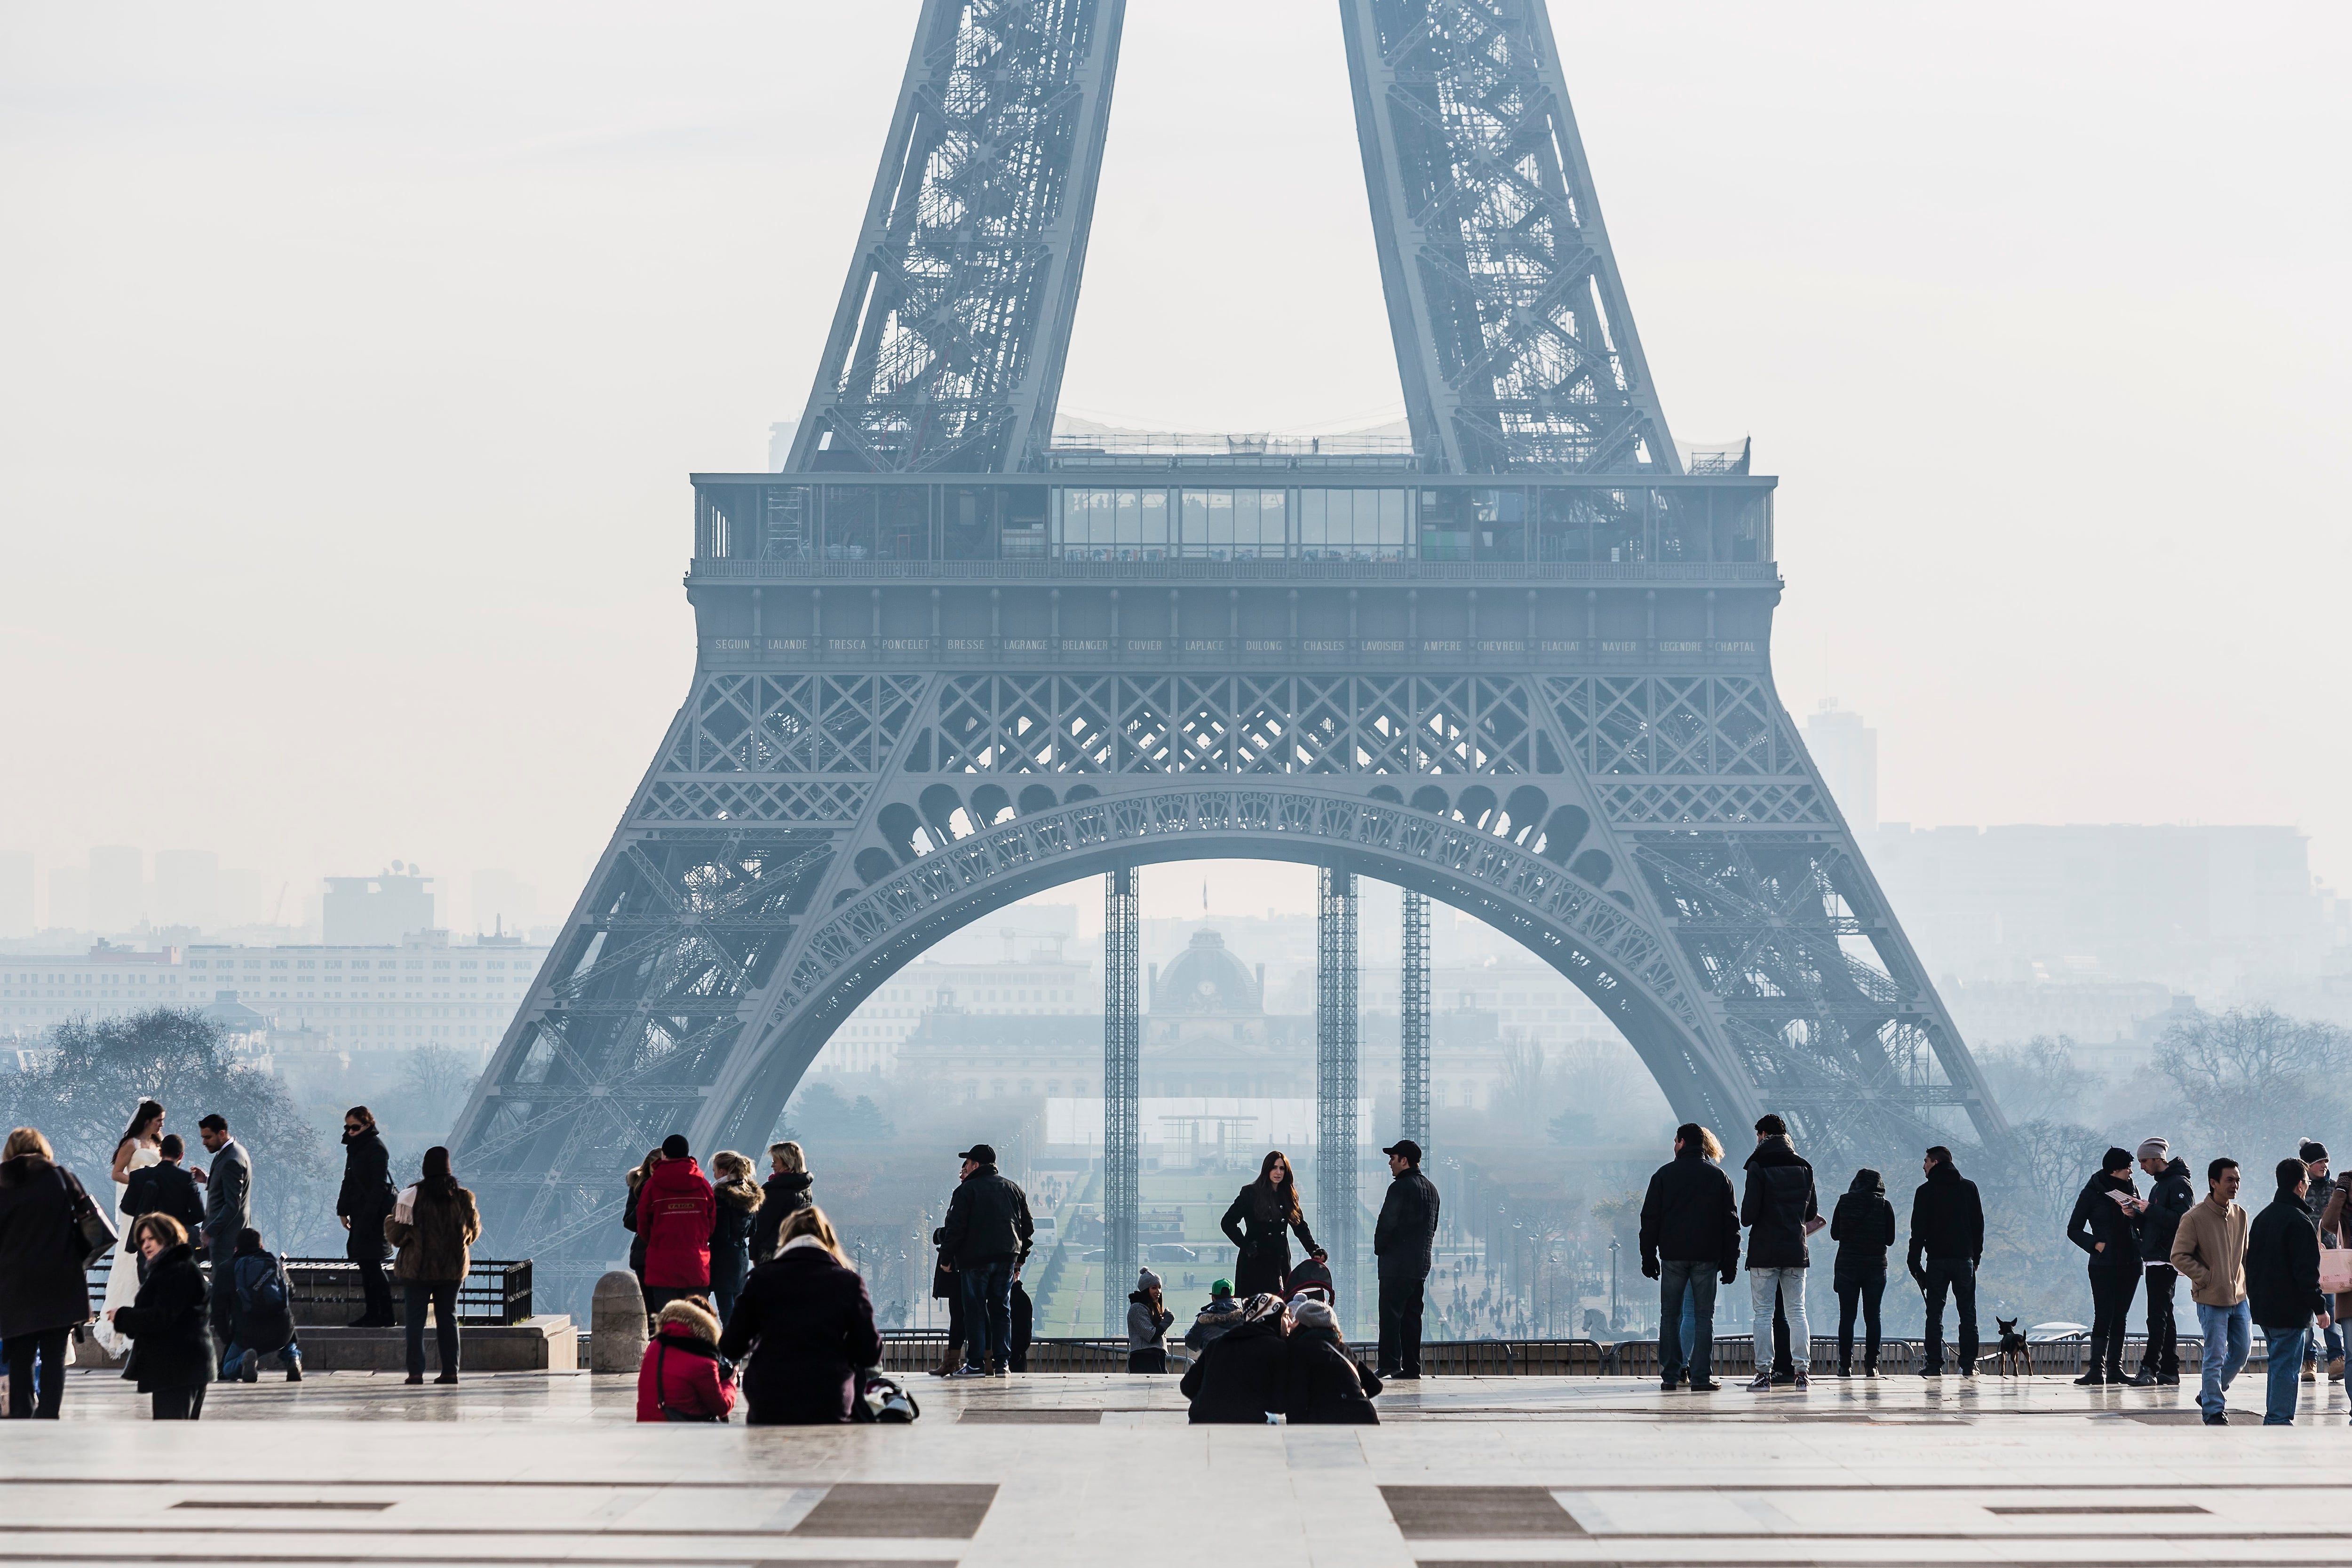 Turistas frente a la Torre Eiffel, en París.